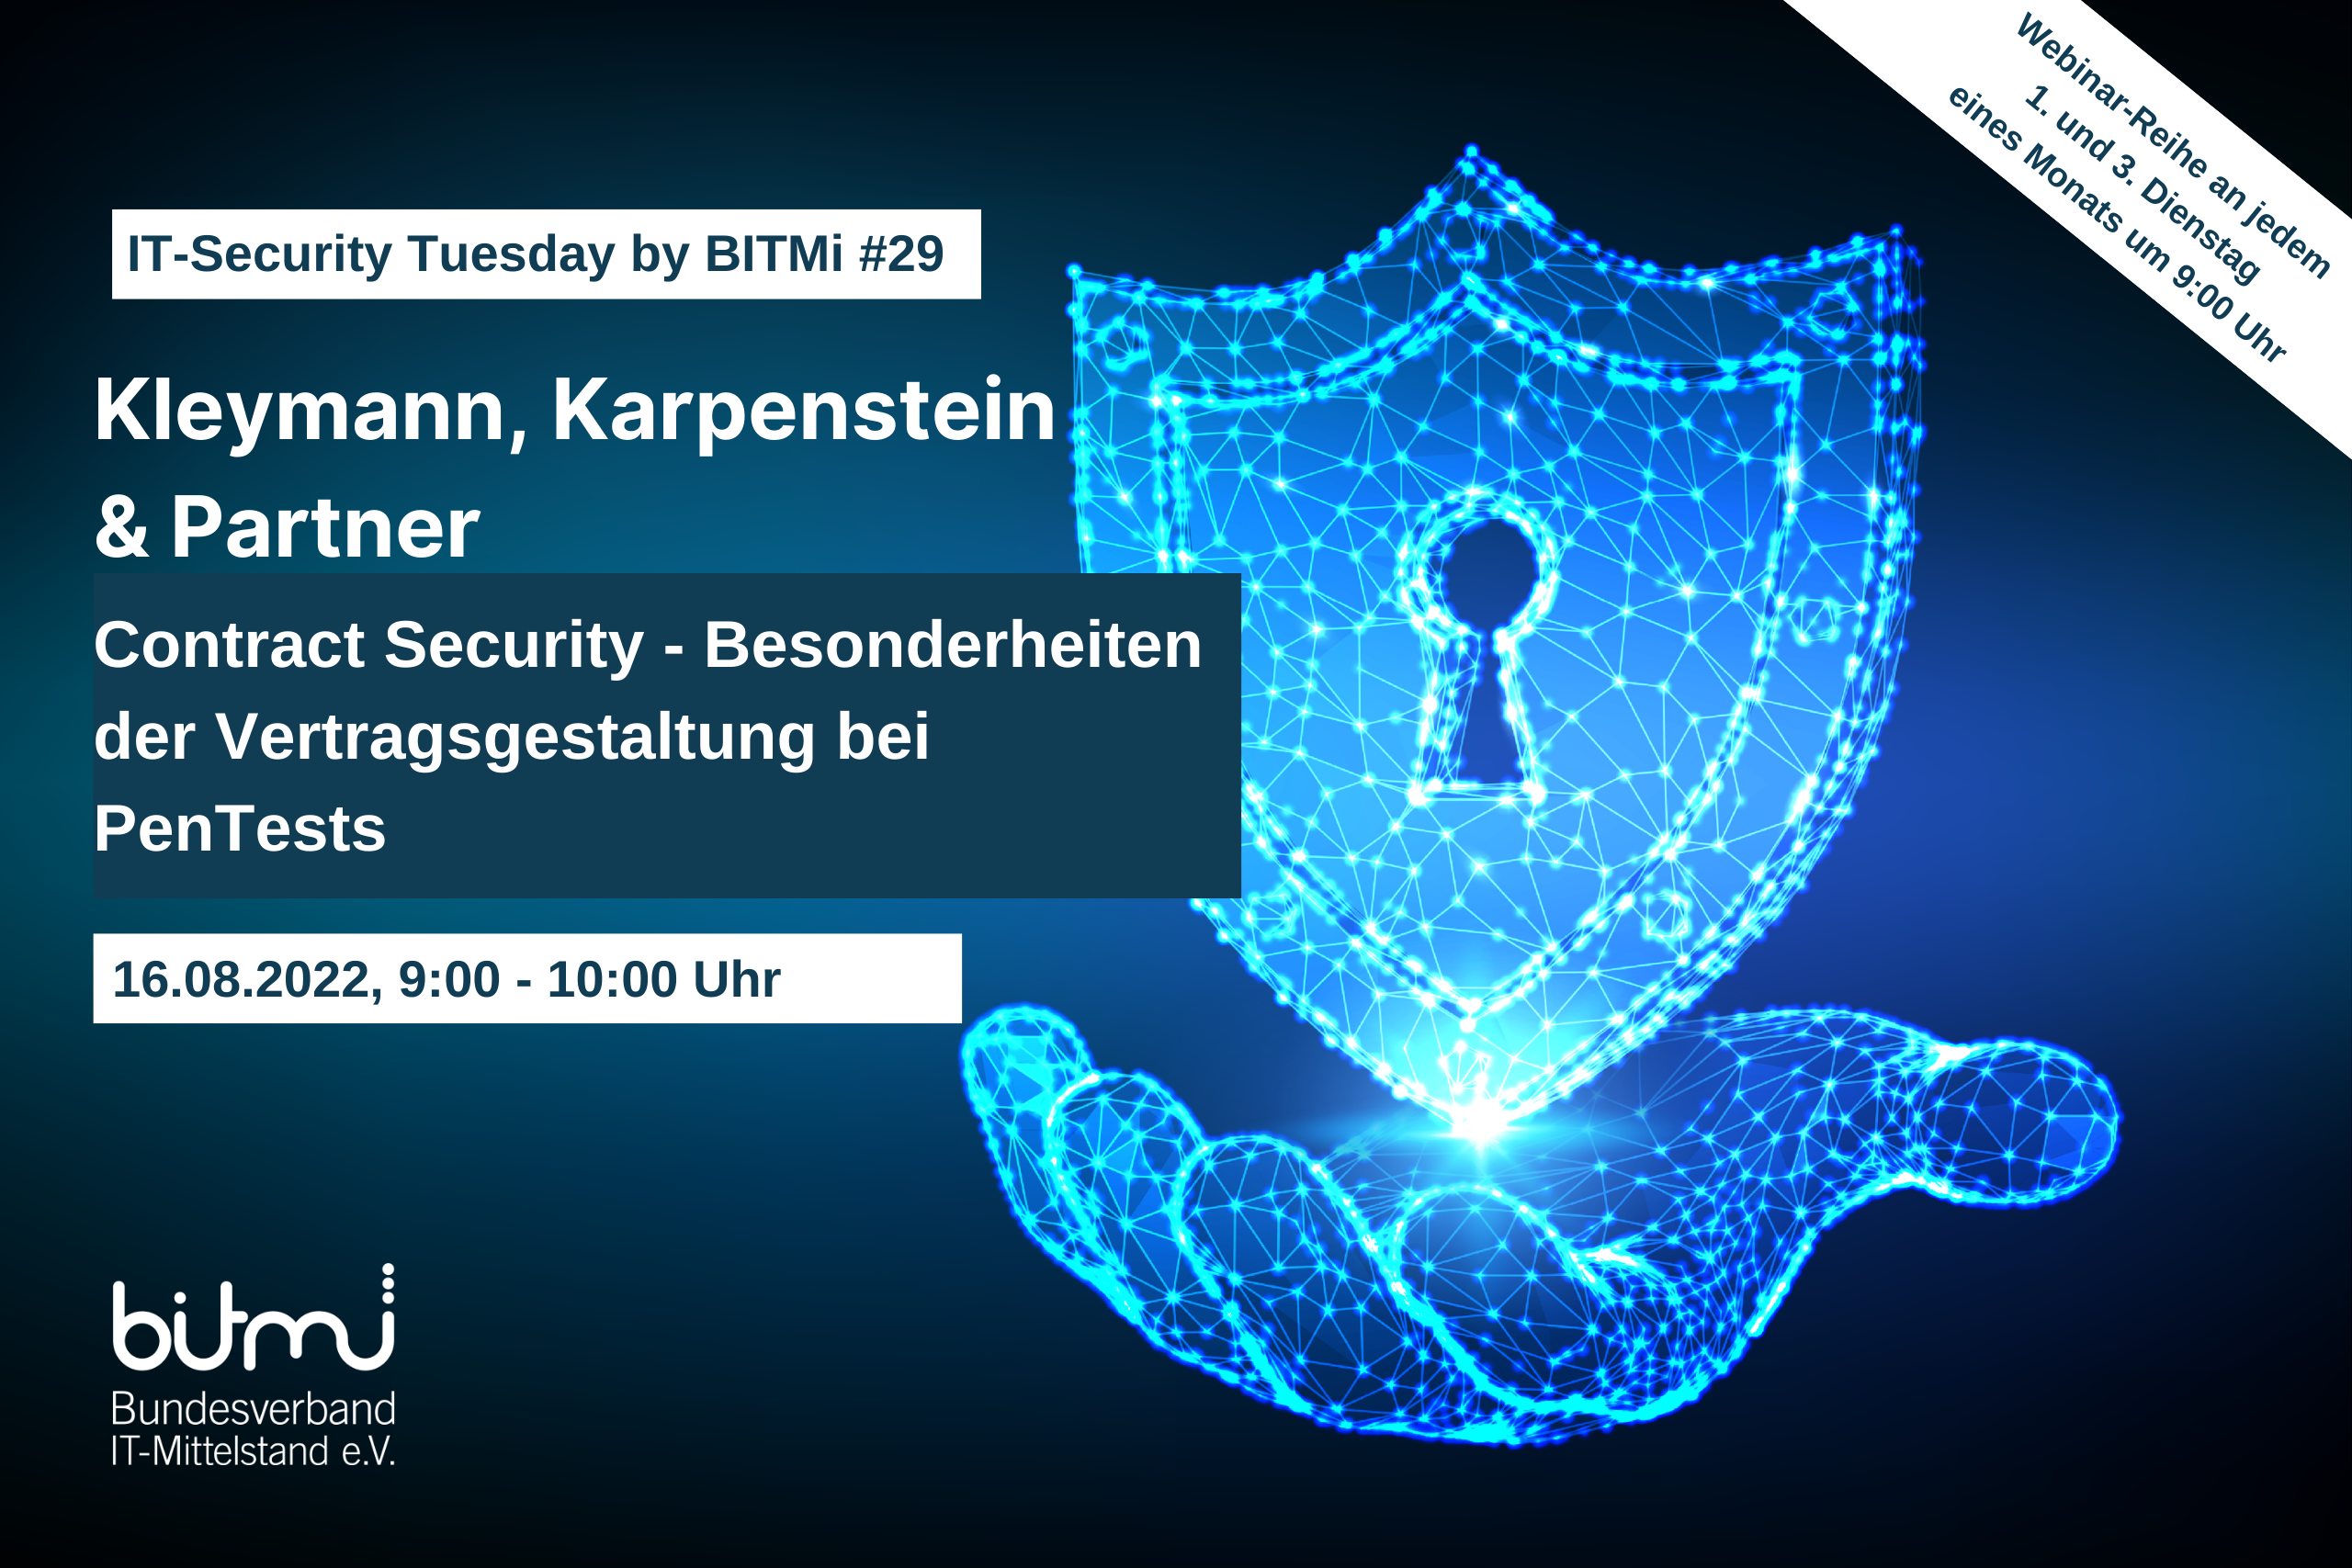 IT-Security Tuesday mit BITMi Mitglied Kleymann, Karpenstein & Partner: „Contract Security - Besonderheiten der Vertragsgestaltung bei PenTests“